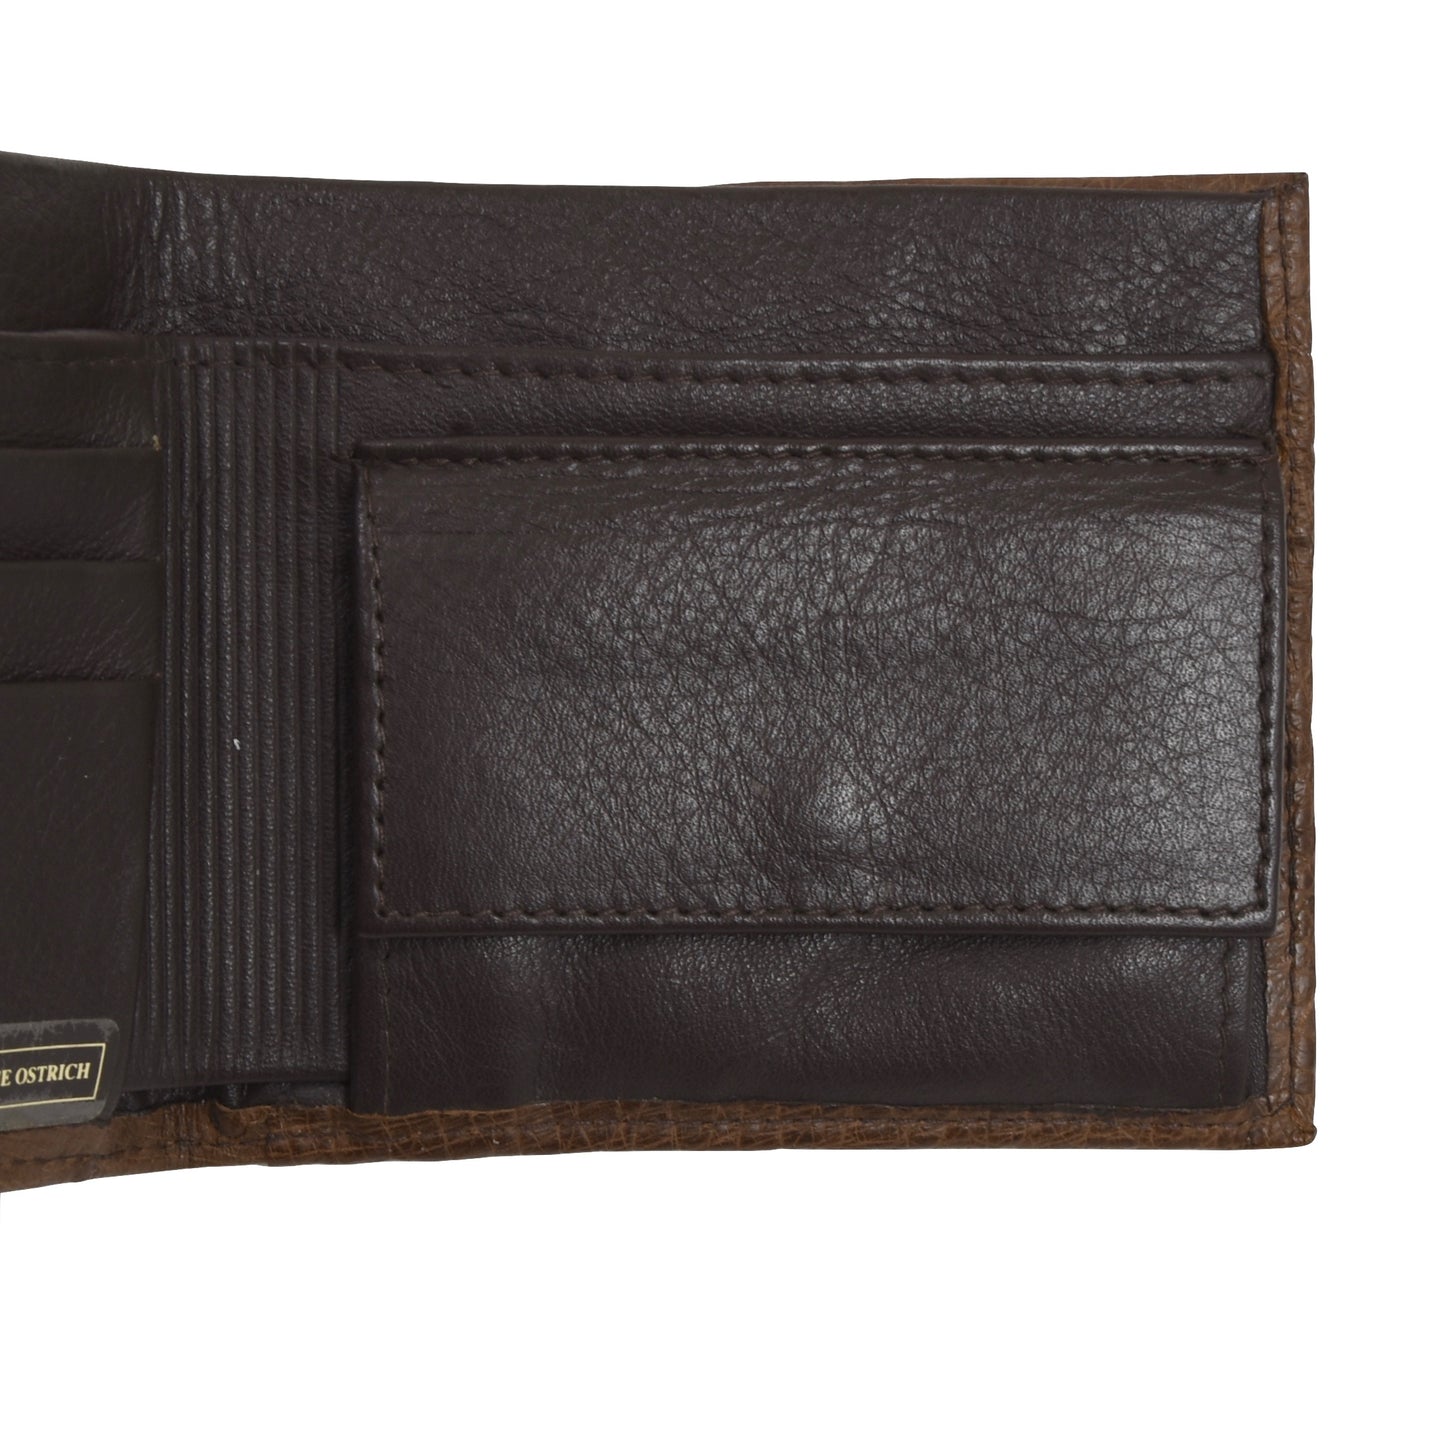 Echte Straußen-Geldbörse/Brieftasche – Braun